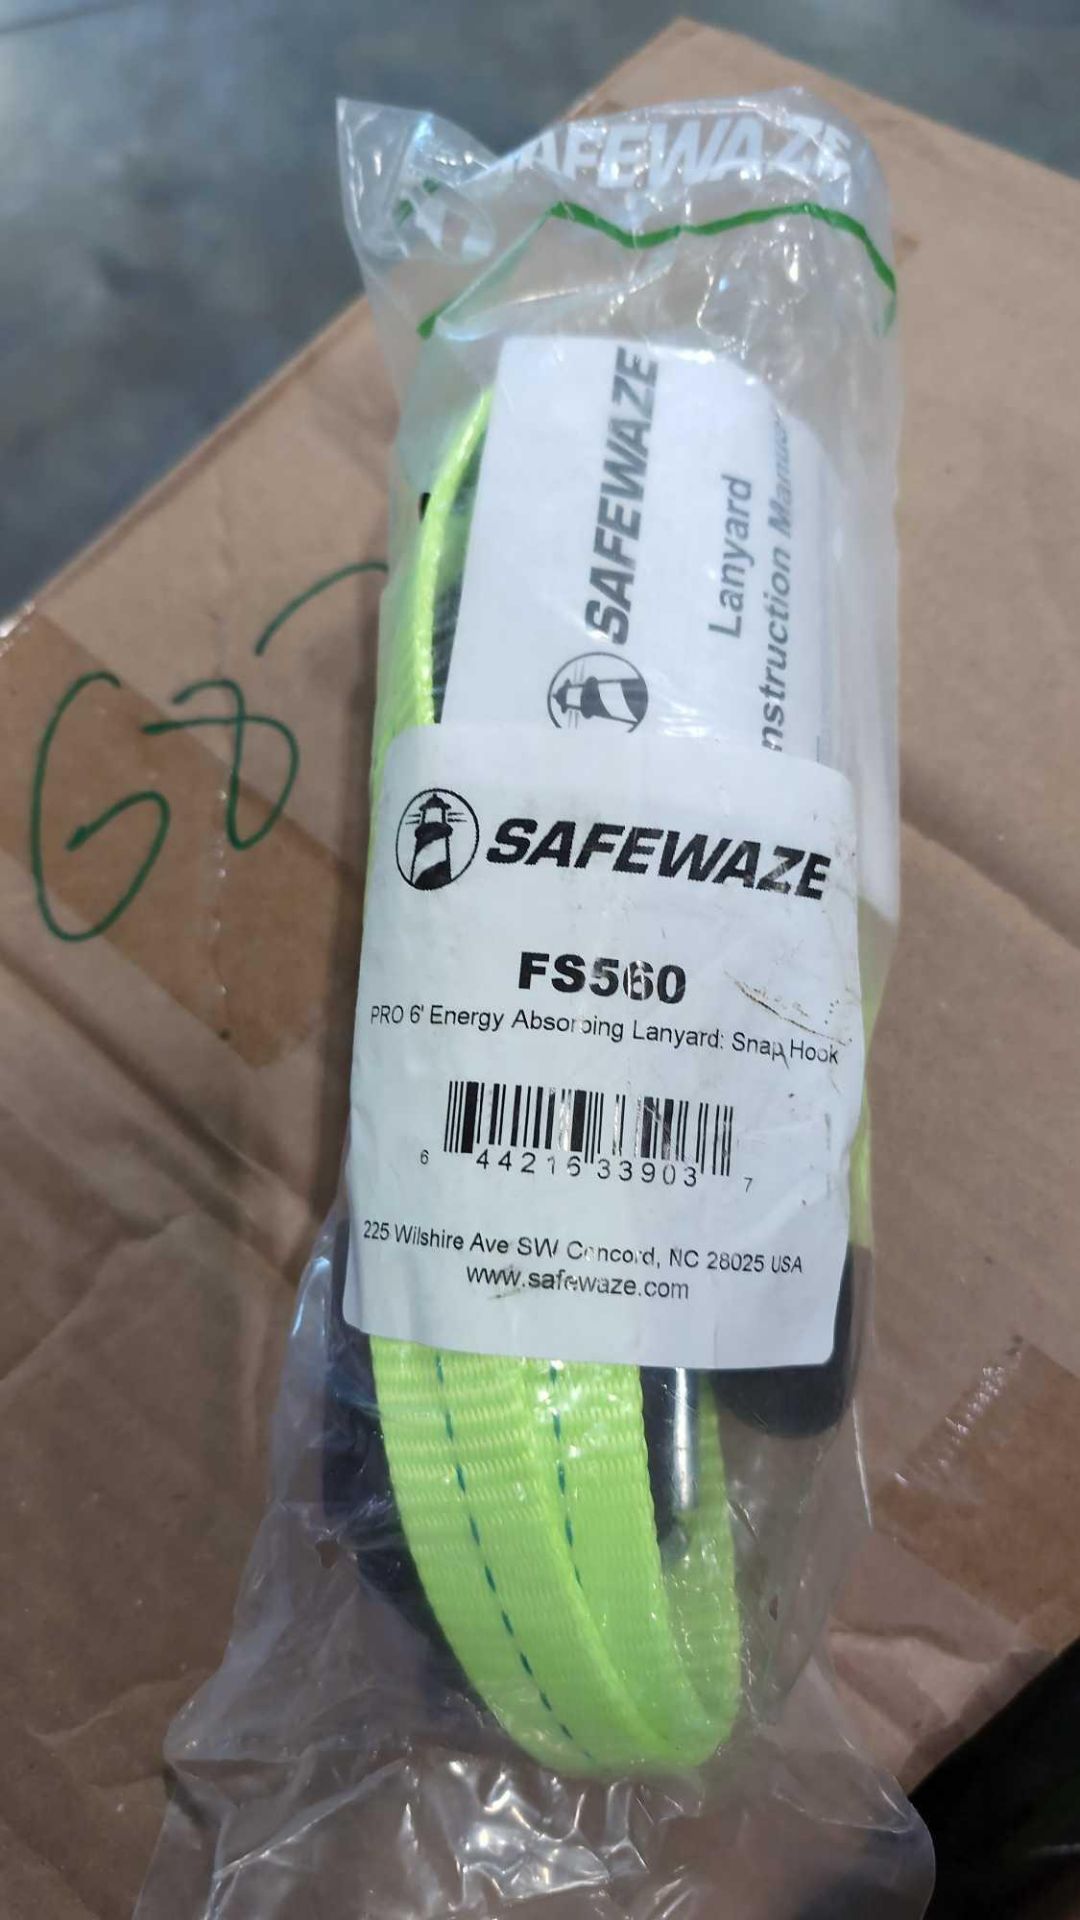 *Safewaze Harness Straps FS560 approx 20 units